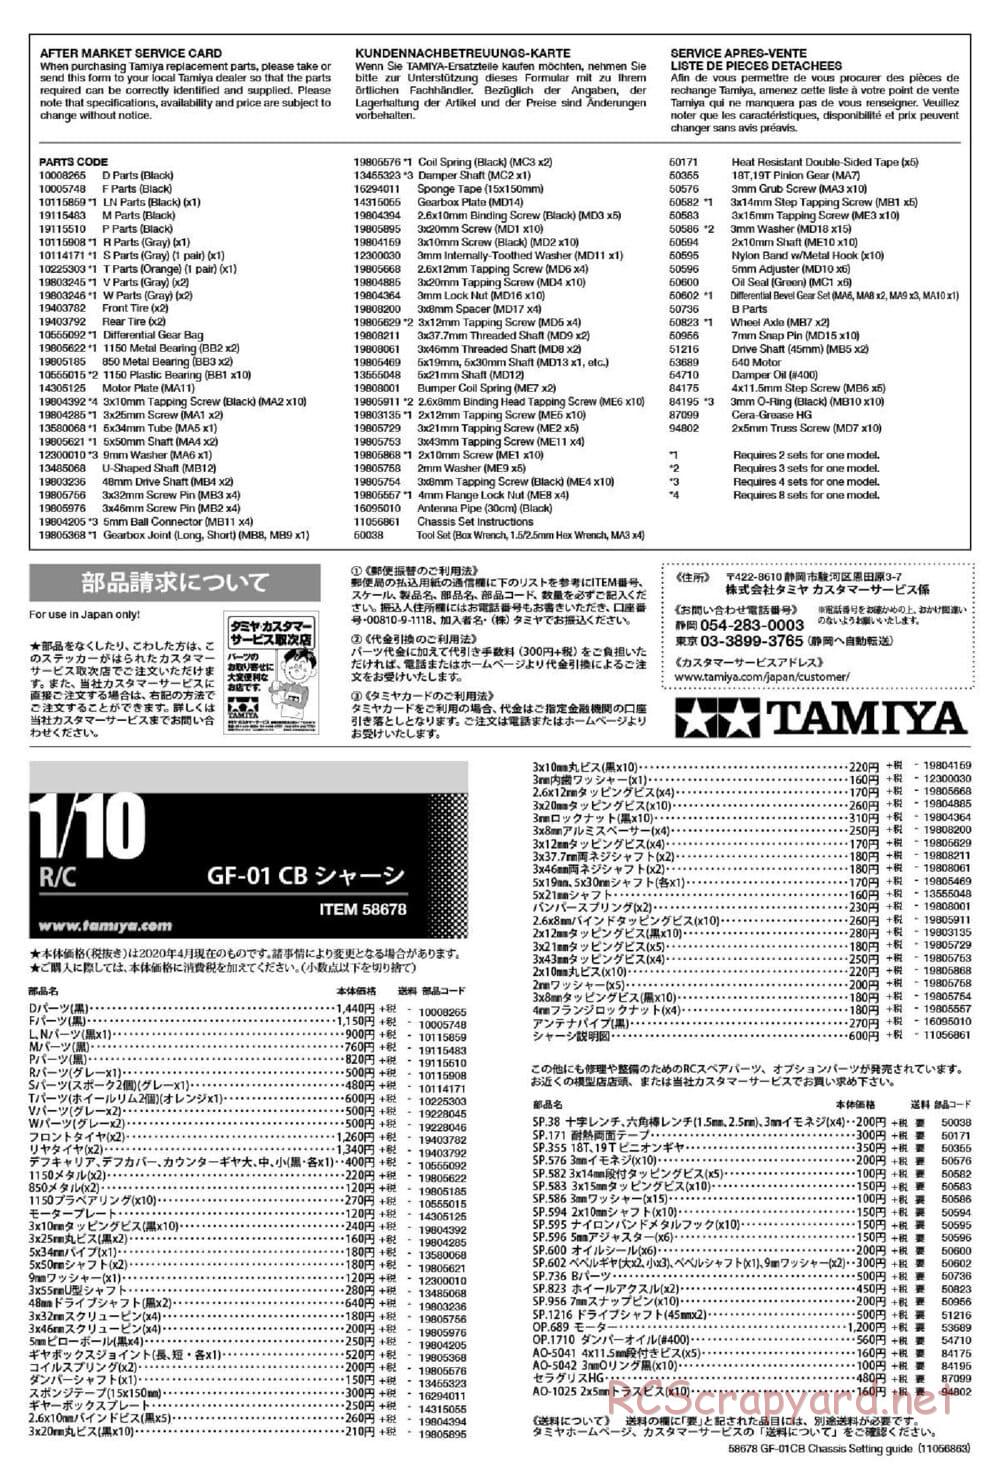 Tamiya - GF-01CB Chassis - Manual - Page 27